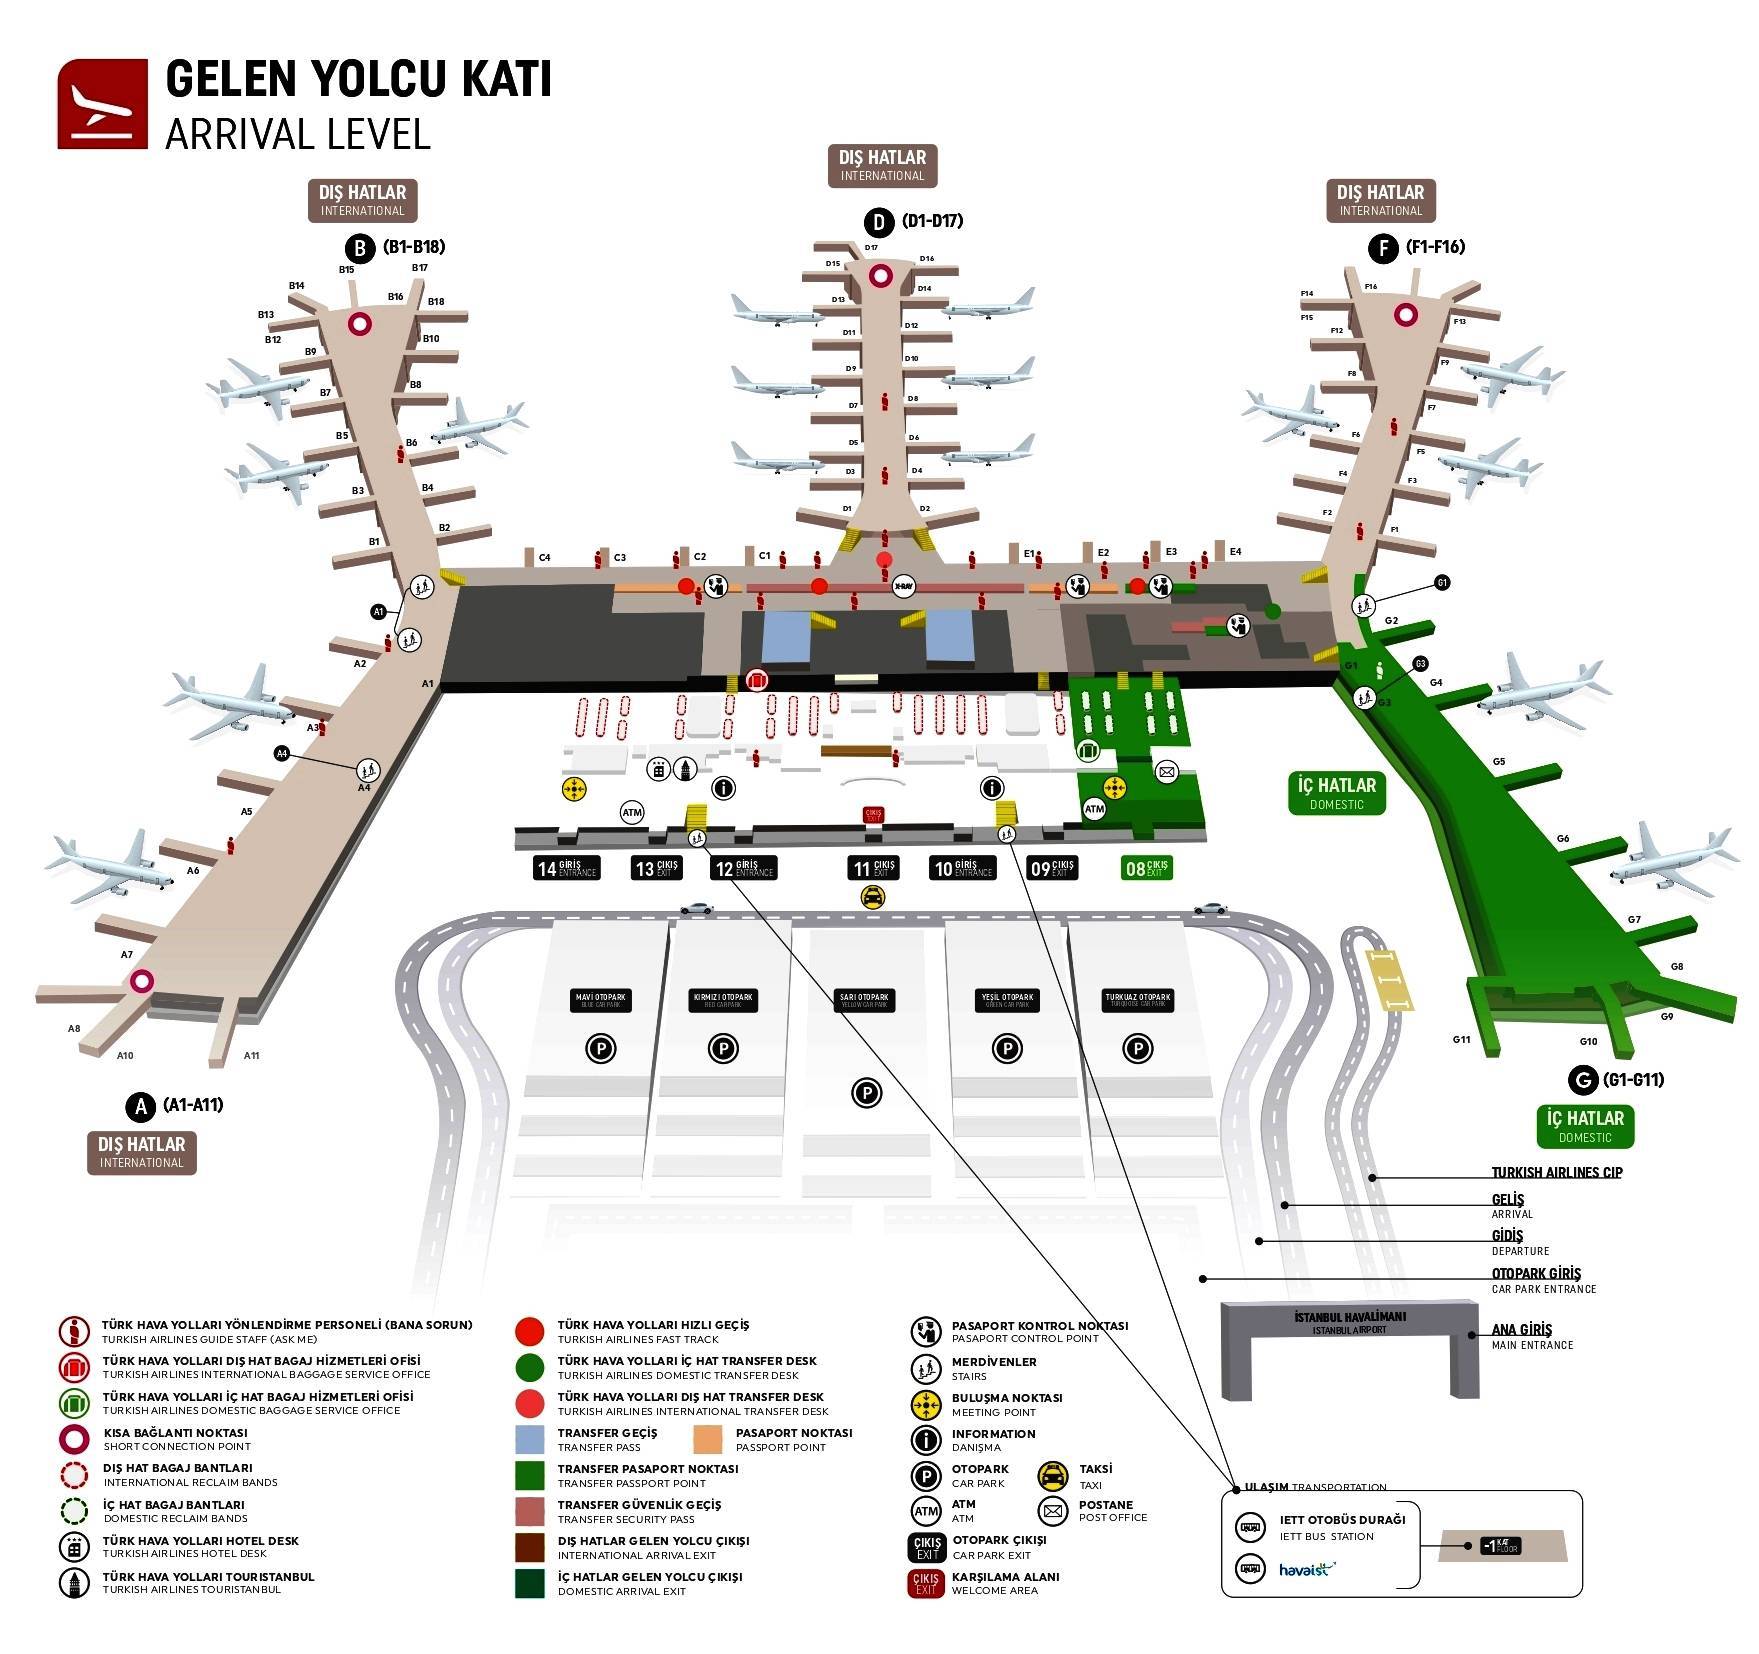 Аэропорт ататюрк в стамбуле: фото и схема аэропорта. как добраться до аэропорта ататюрк - 2021 - страница 10